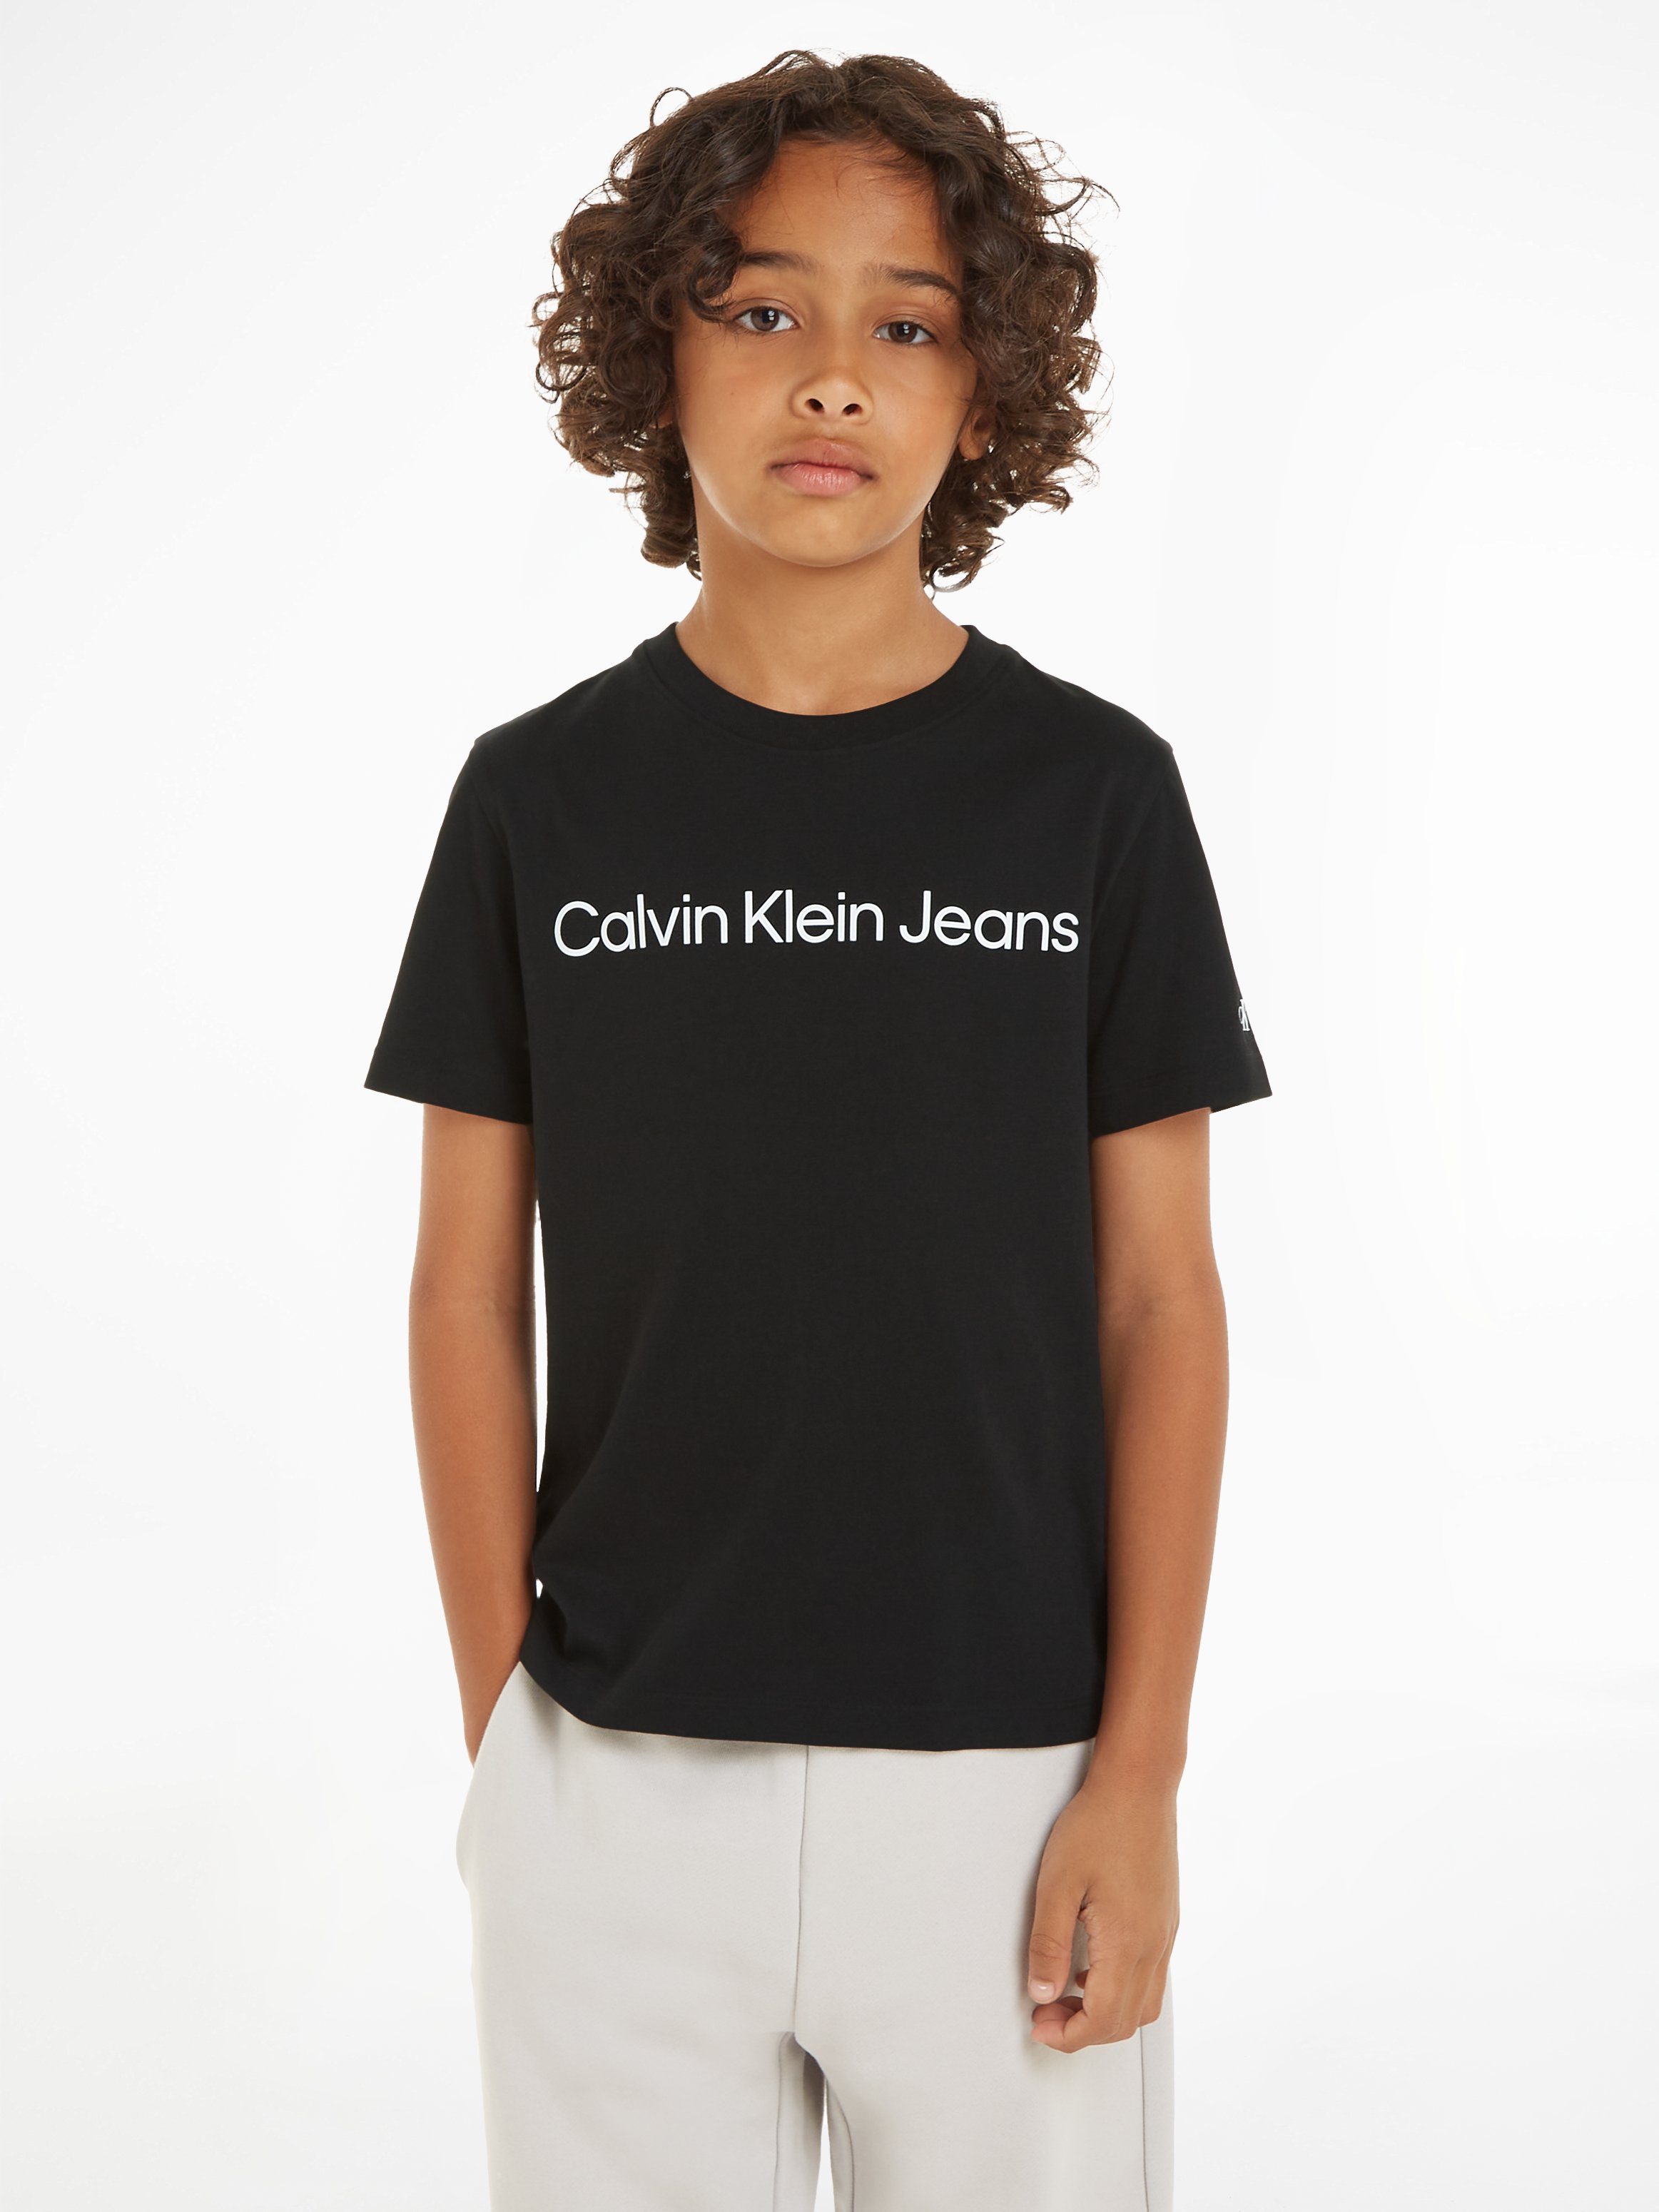 Calvin Klein Kinder SS 16 Jeans bis Sweatshirt LOGO für INST. T-SHIRT Jahre